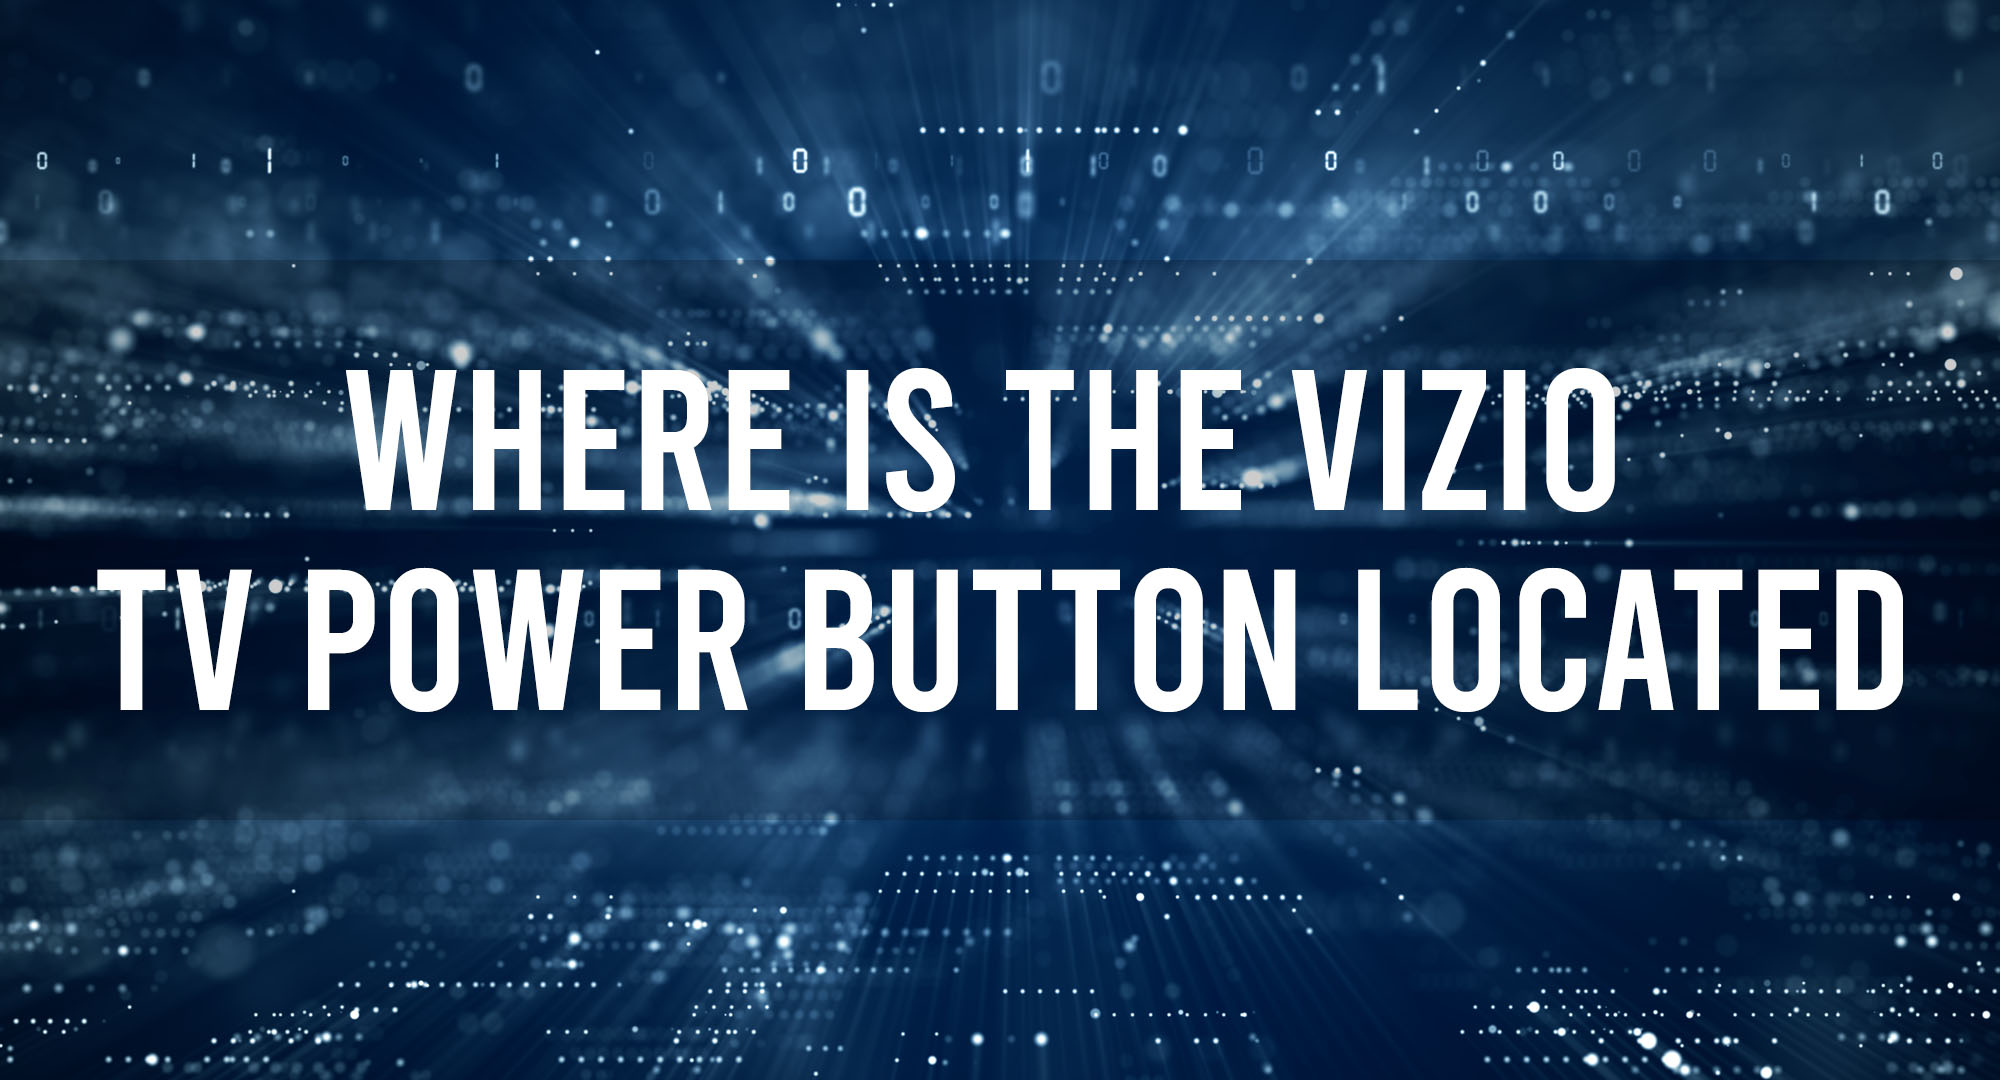 Where is the Vizio TV power button located